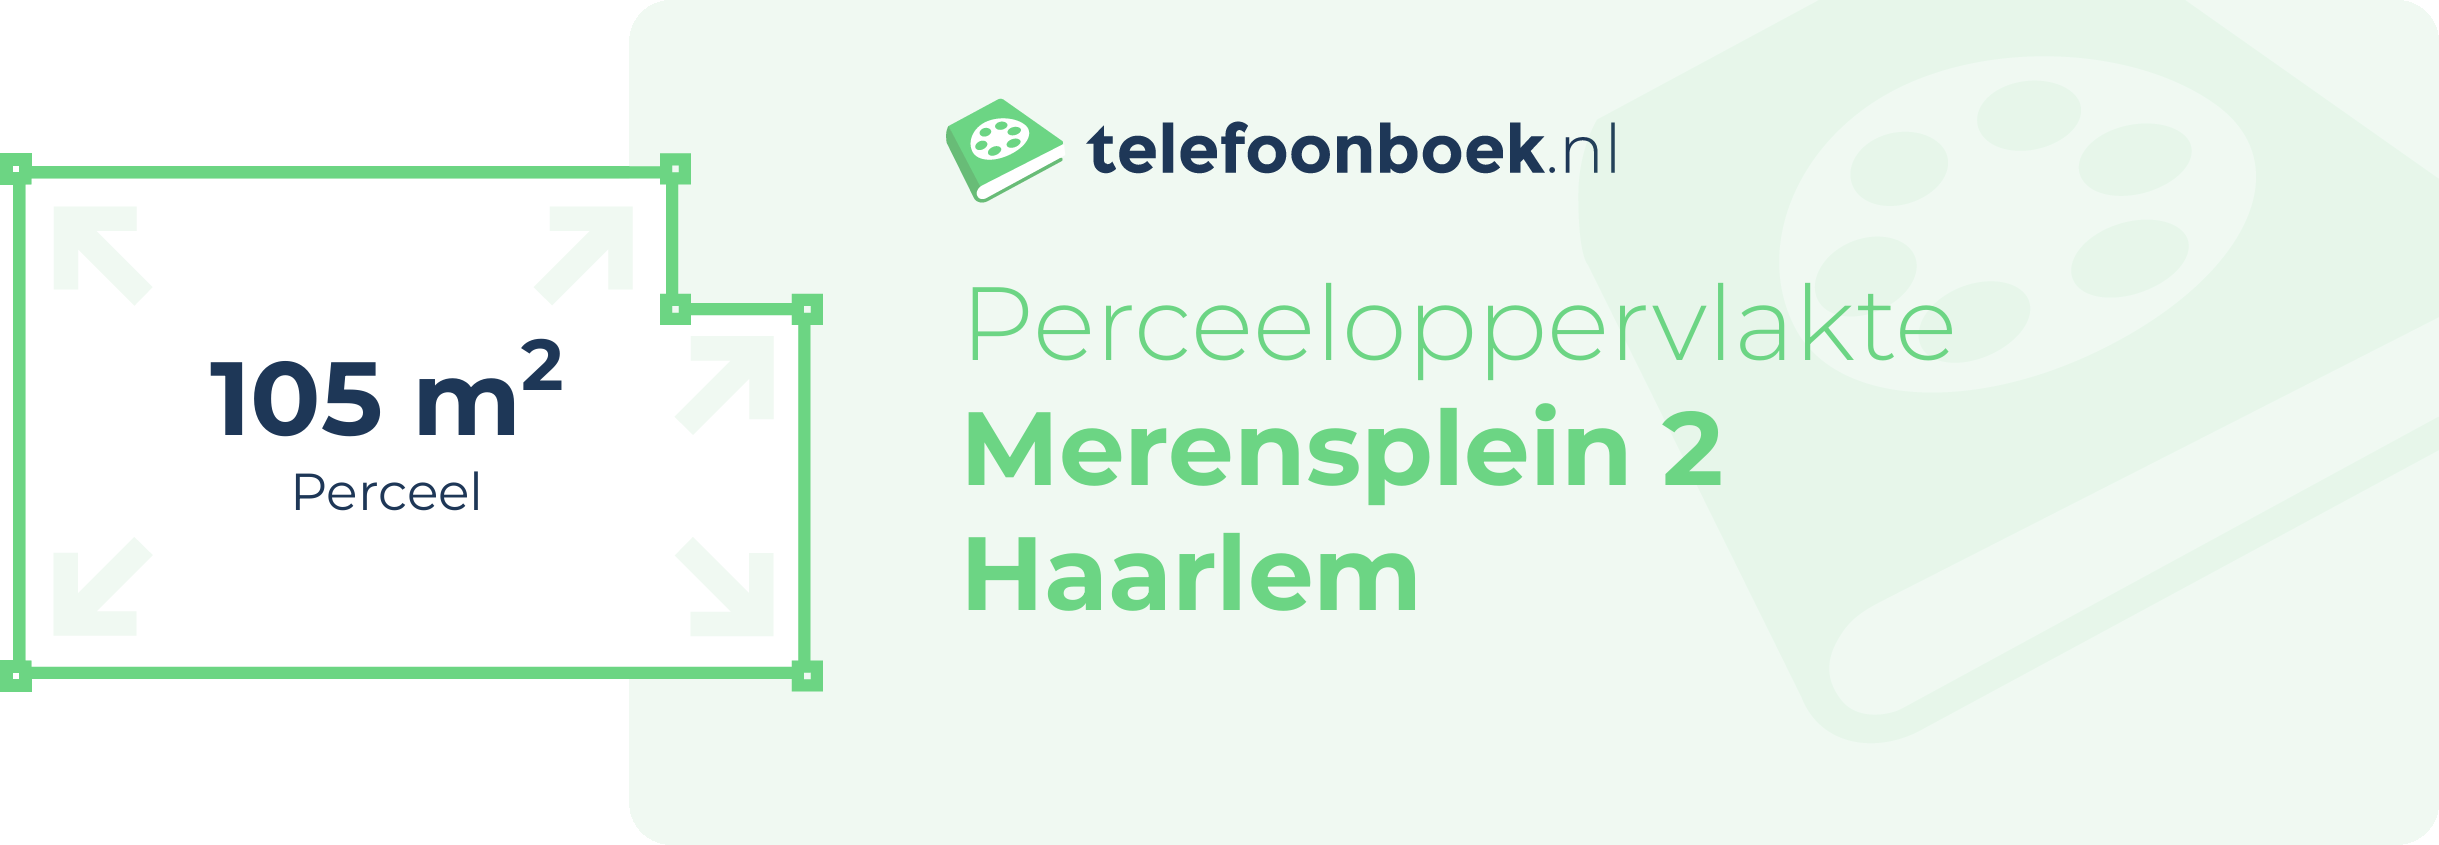 Perceeloppervlakte Merensplein 2 Haarlem